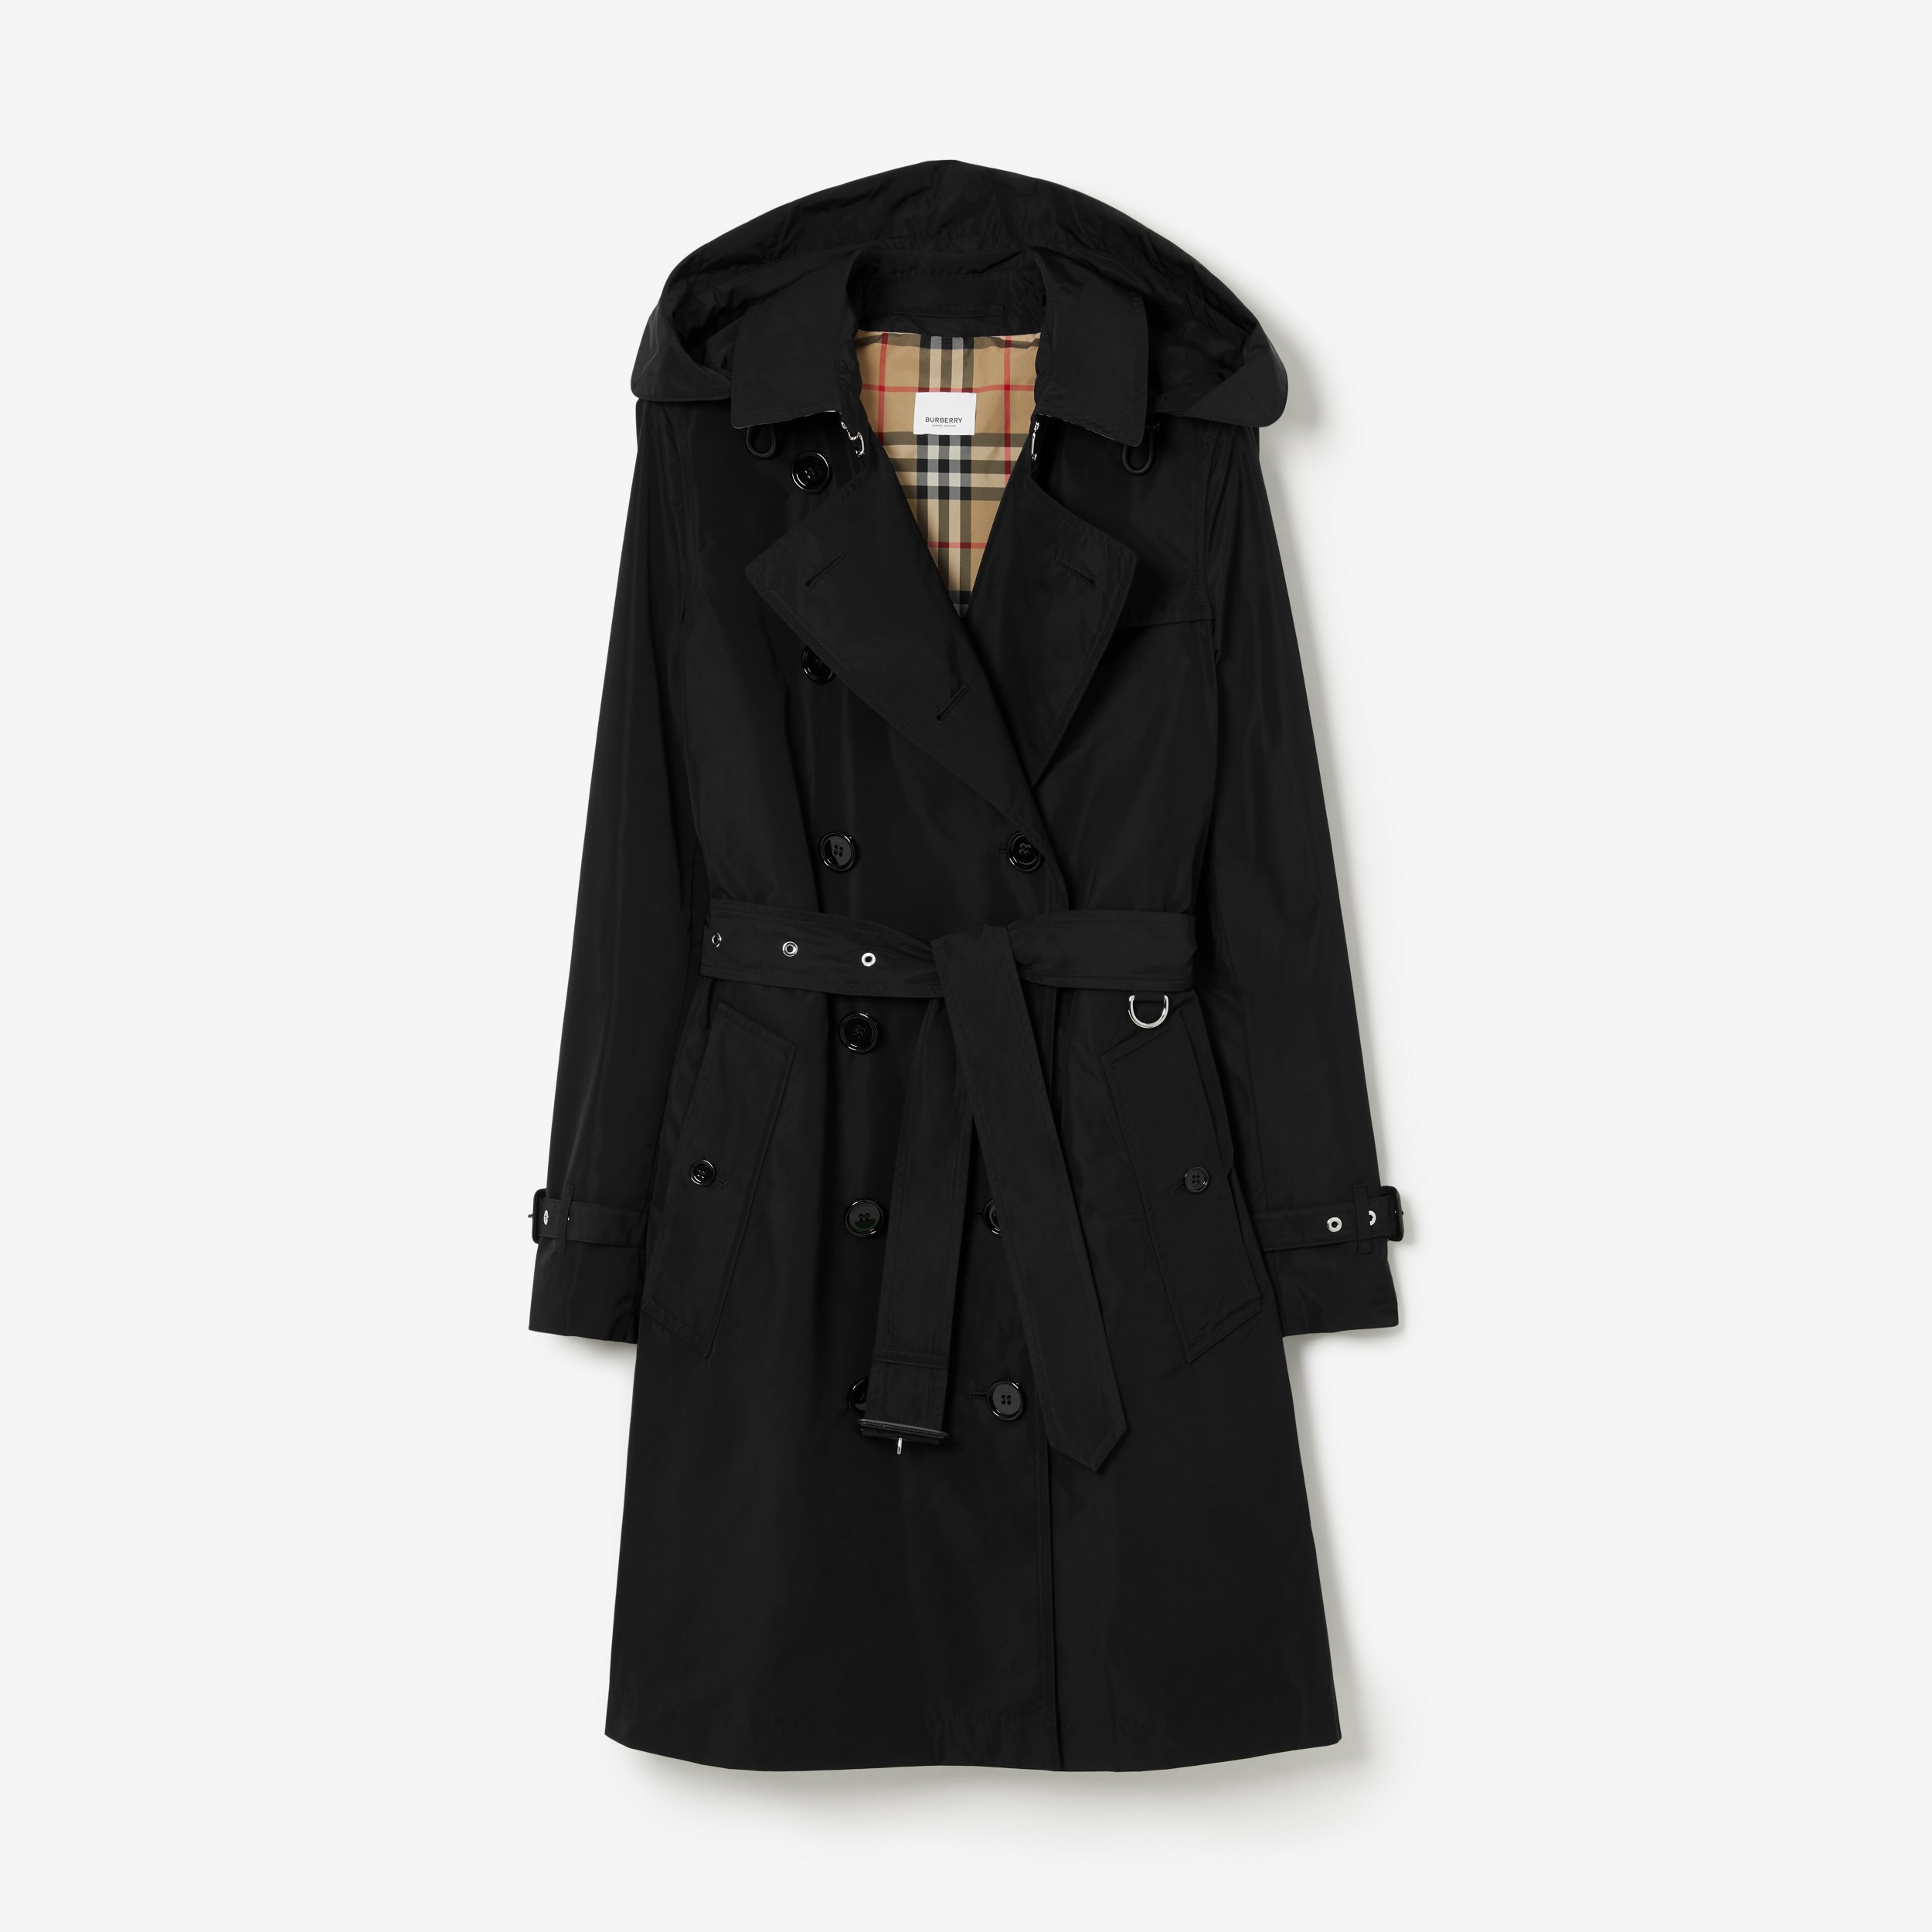 Trench coat Kensington de tafetá com capuz removível (Preto) - Mulheres | Burberry® oficial - 1